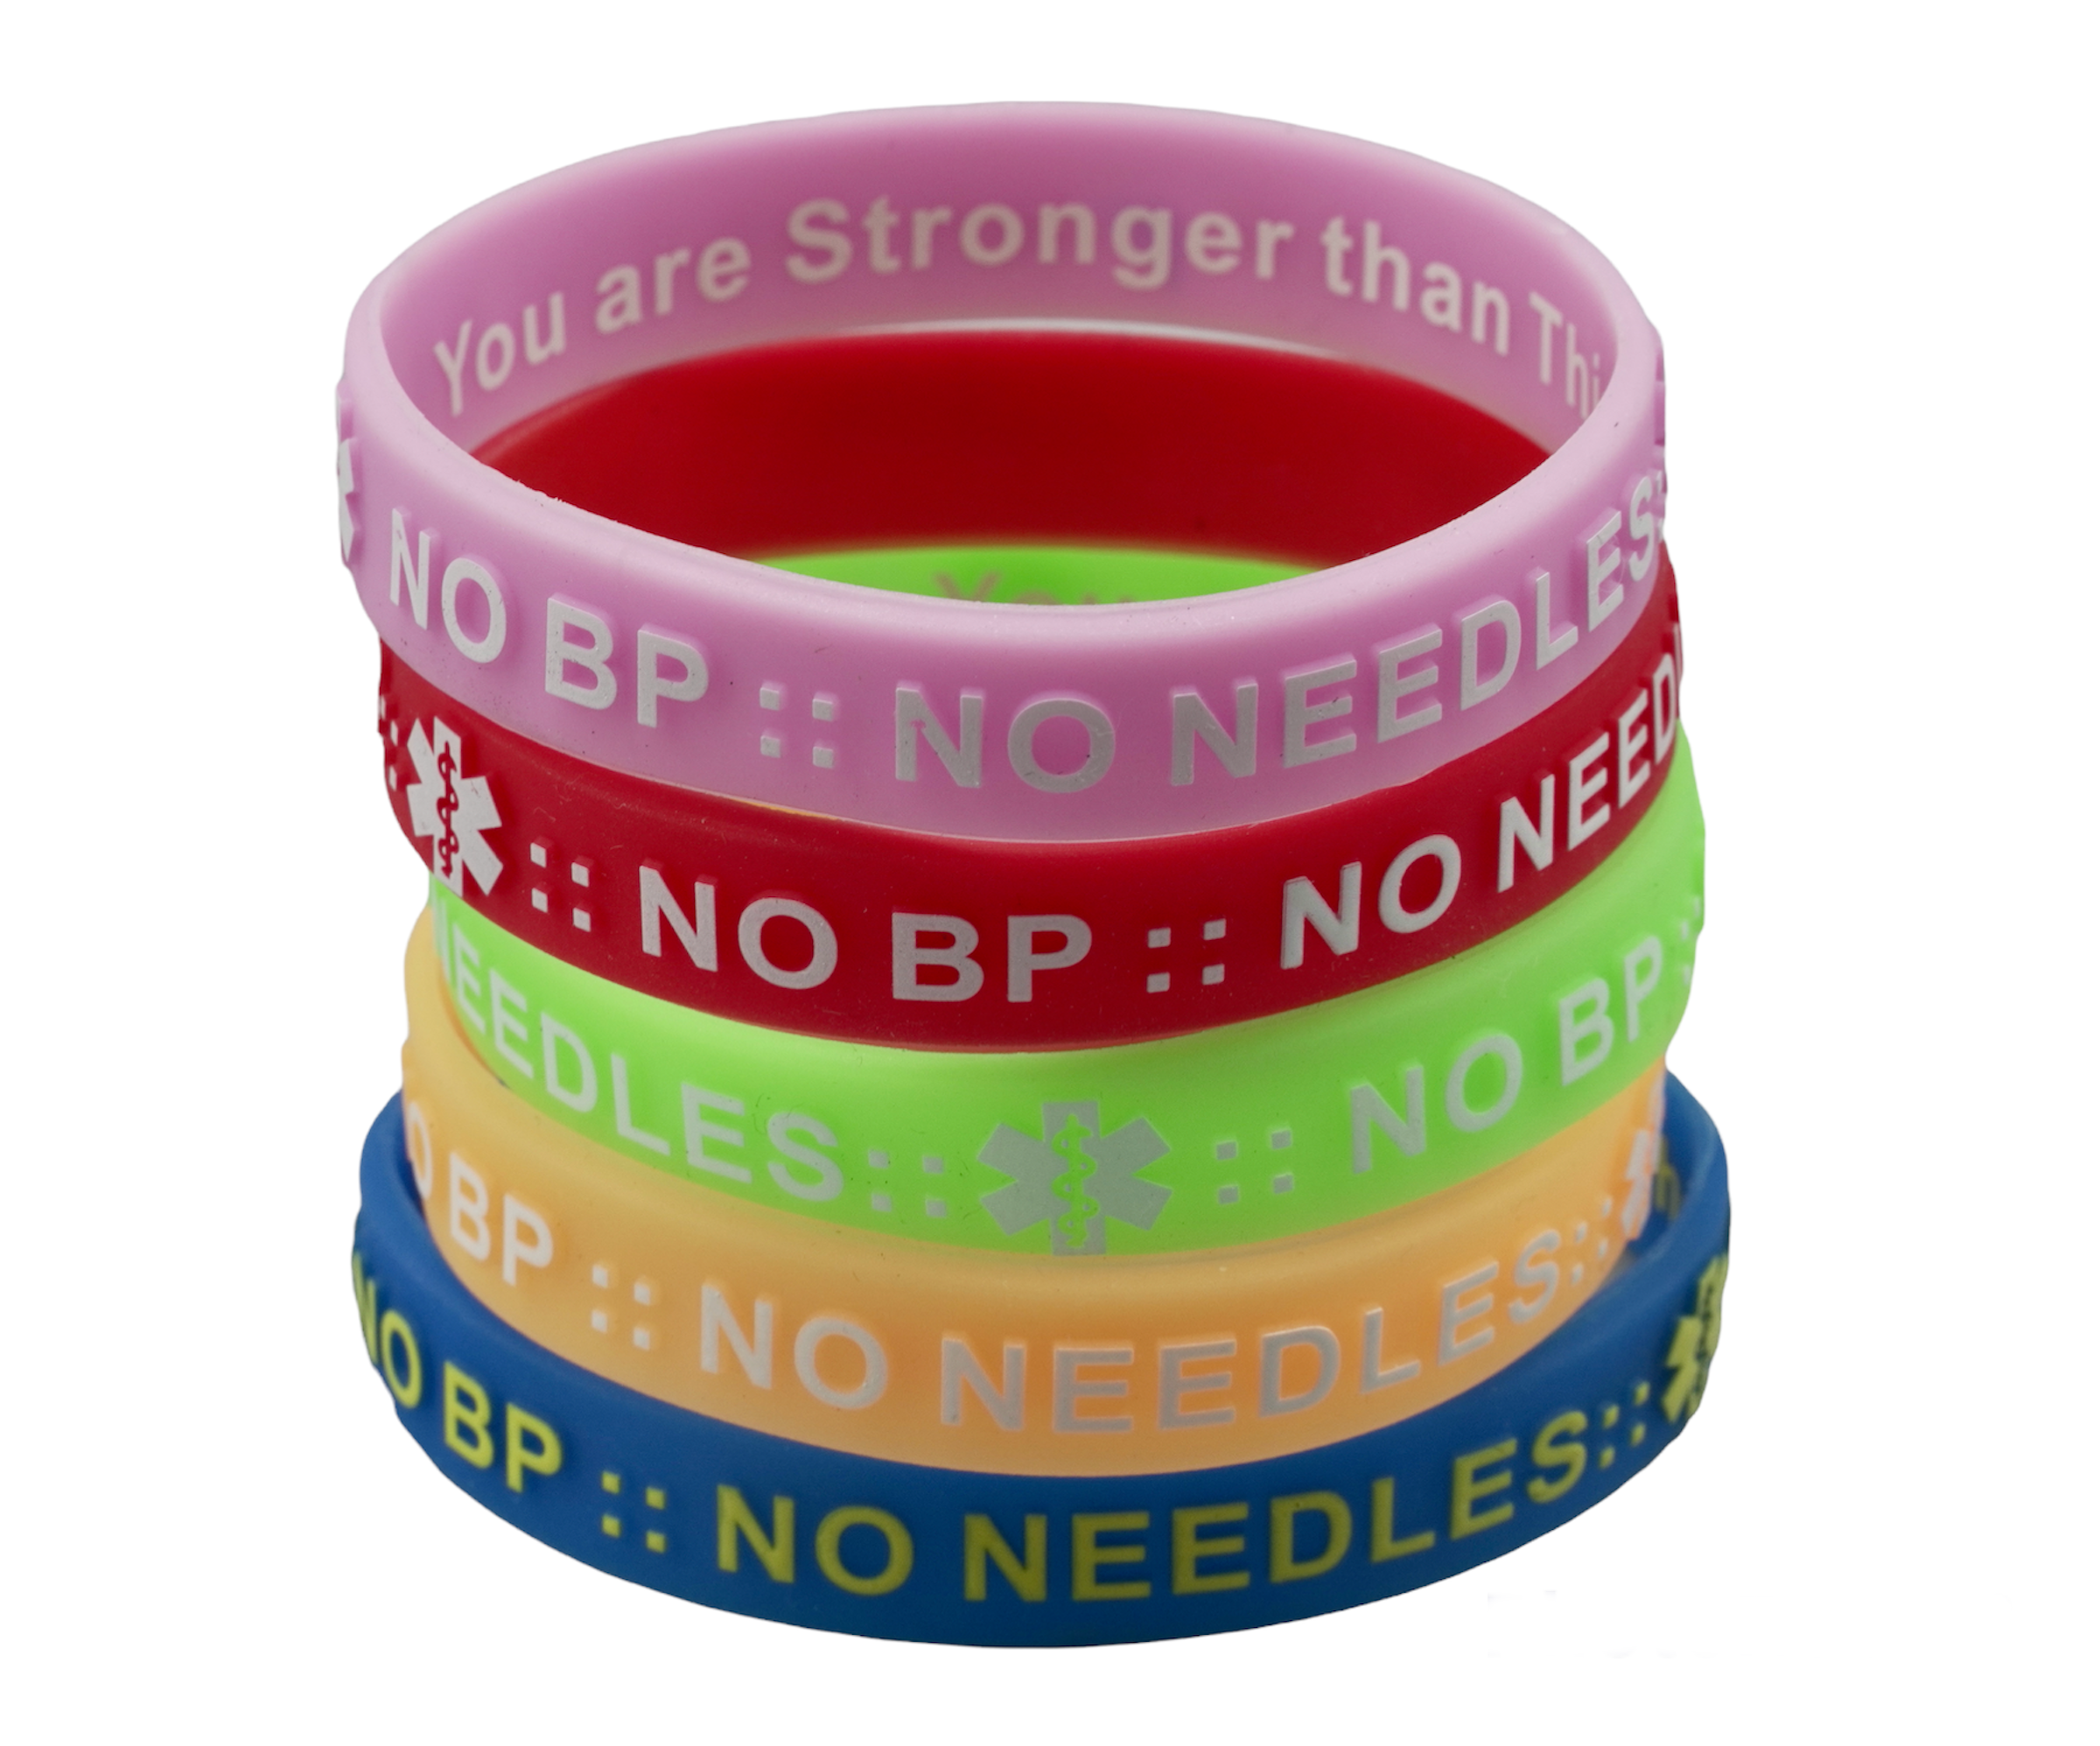 NO BP NO NEEDLES. Medical Alert Wristbands